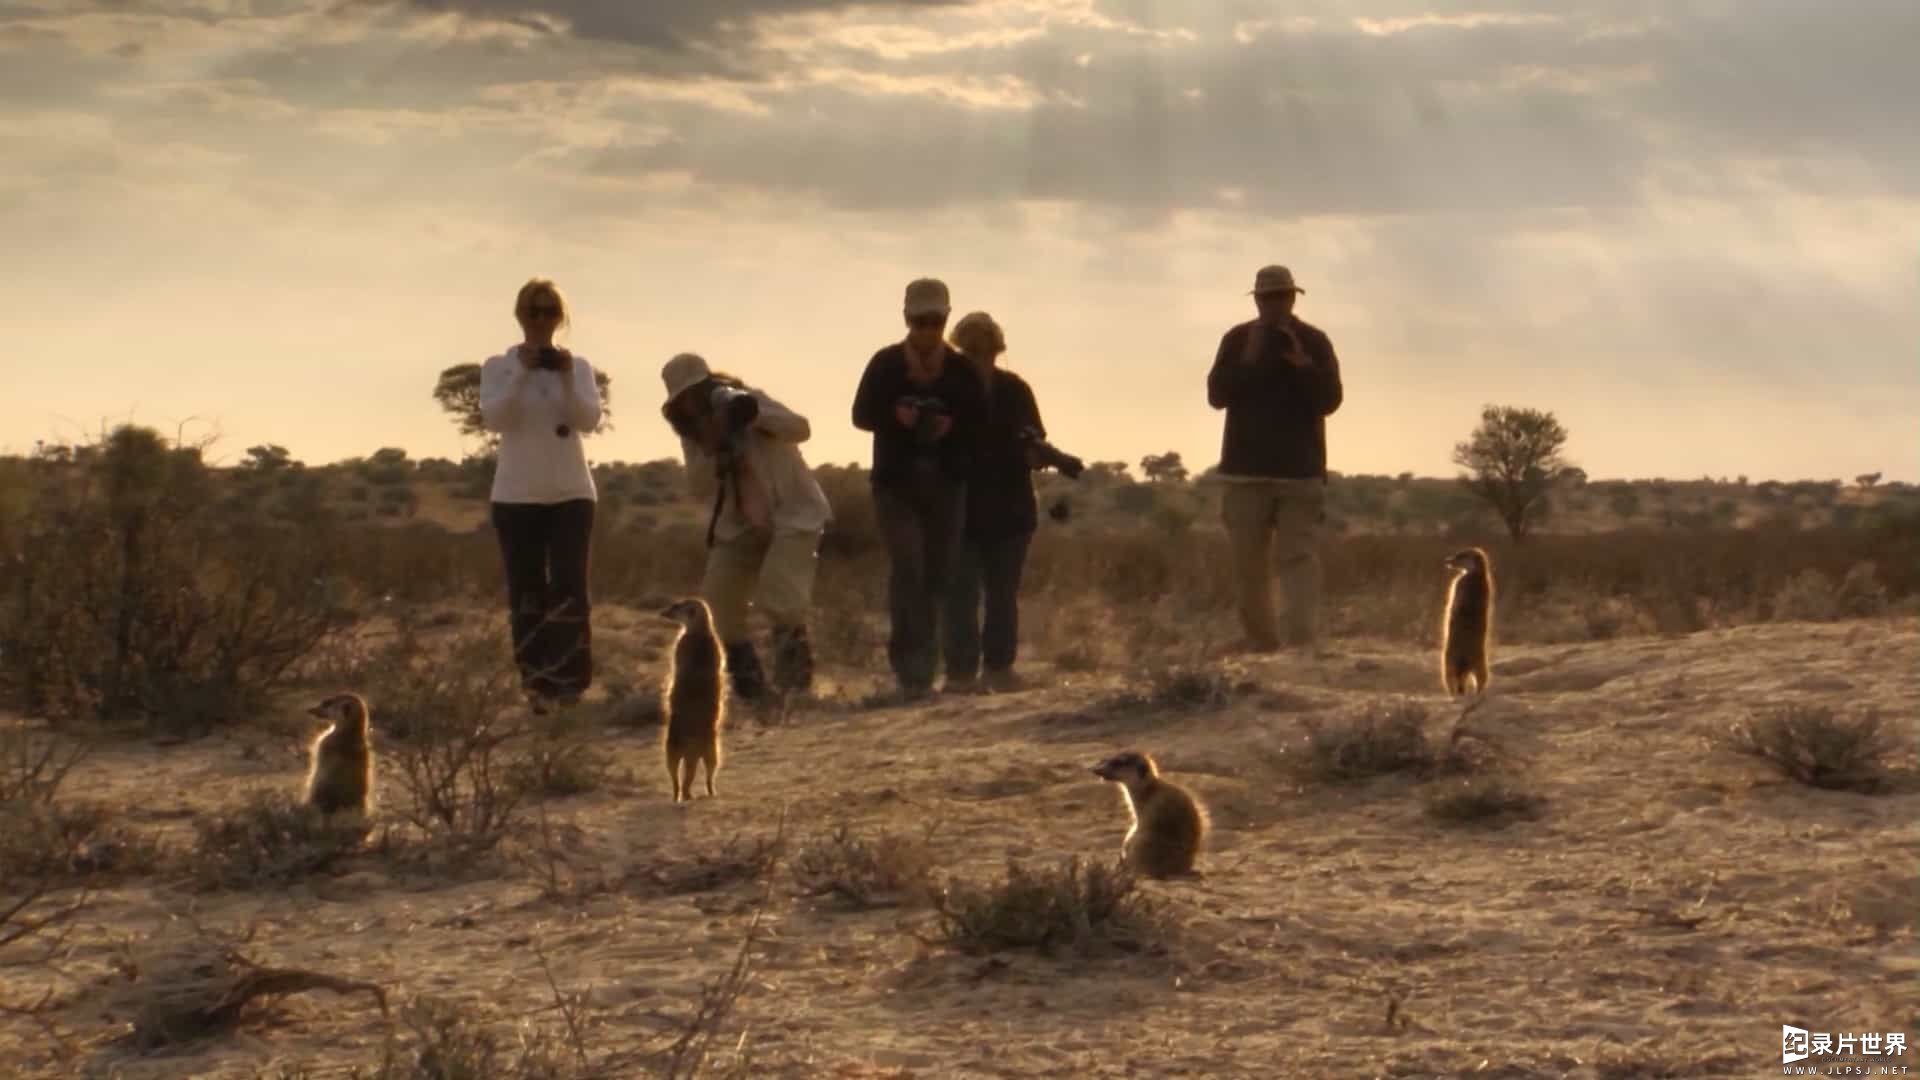 BBC纪录片《狐獴：超级动物明星的秘密 Meerkats Secrets of an Animal Superstar 2013》全1集